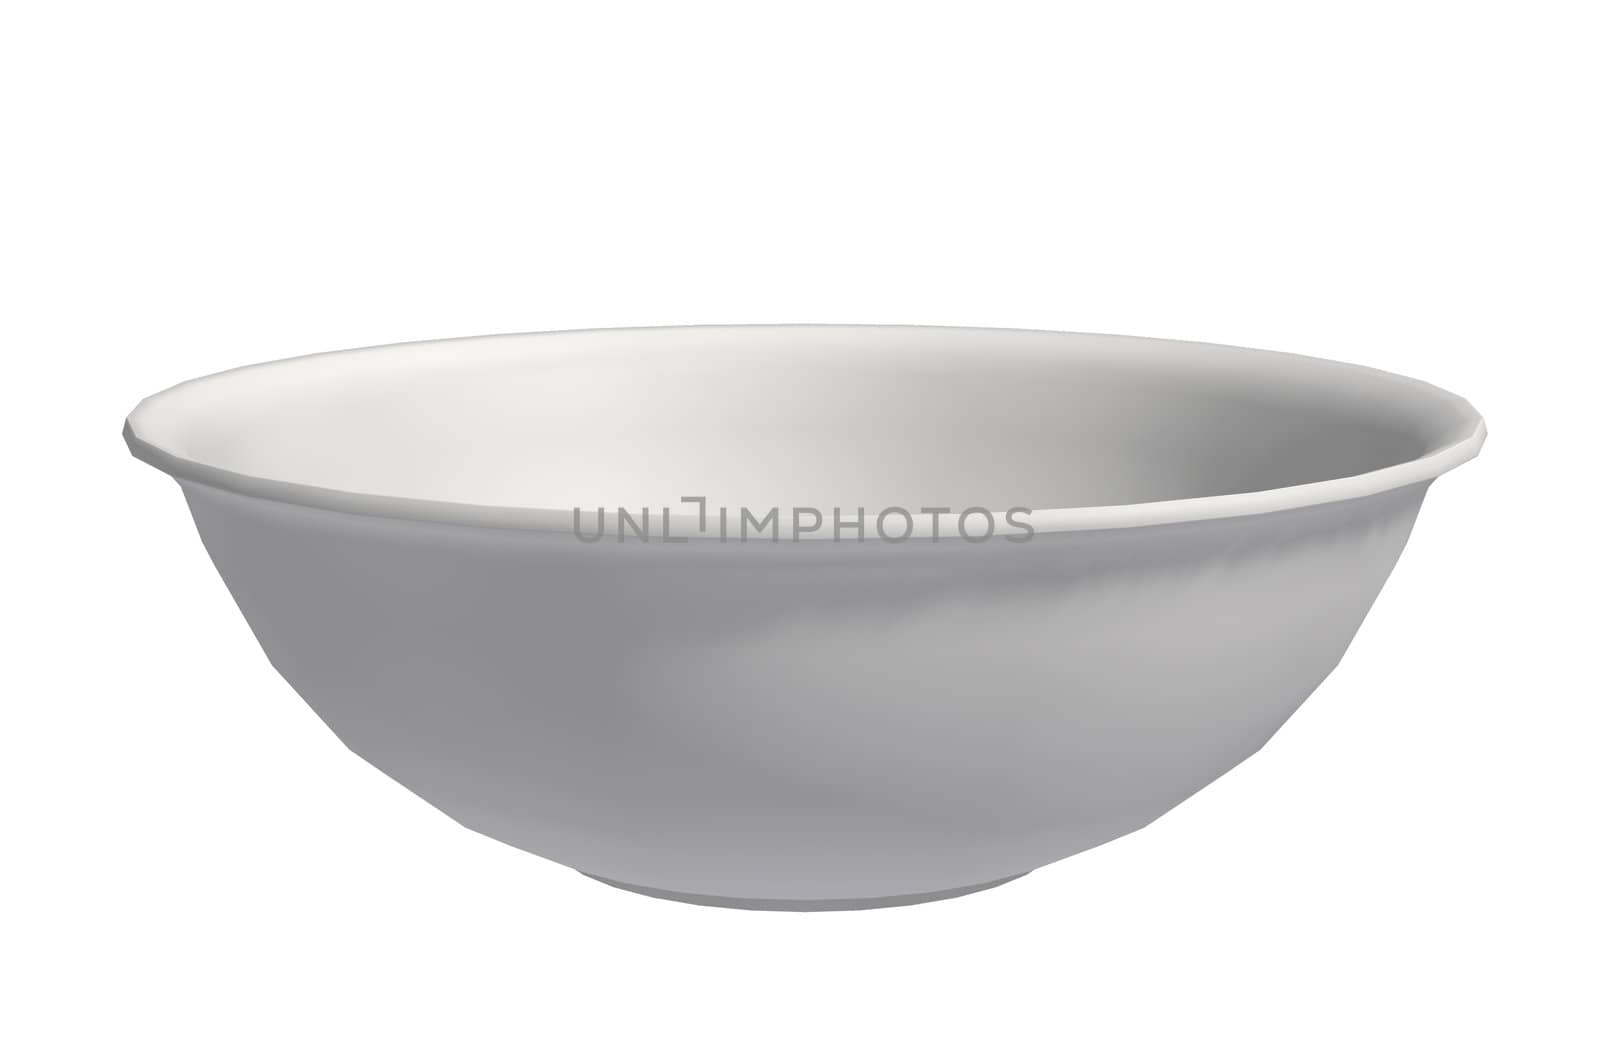 A White Bowl by kathygold